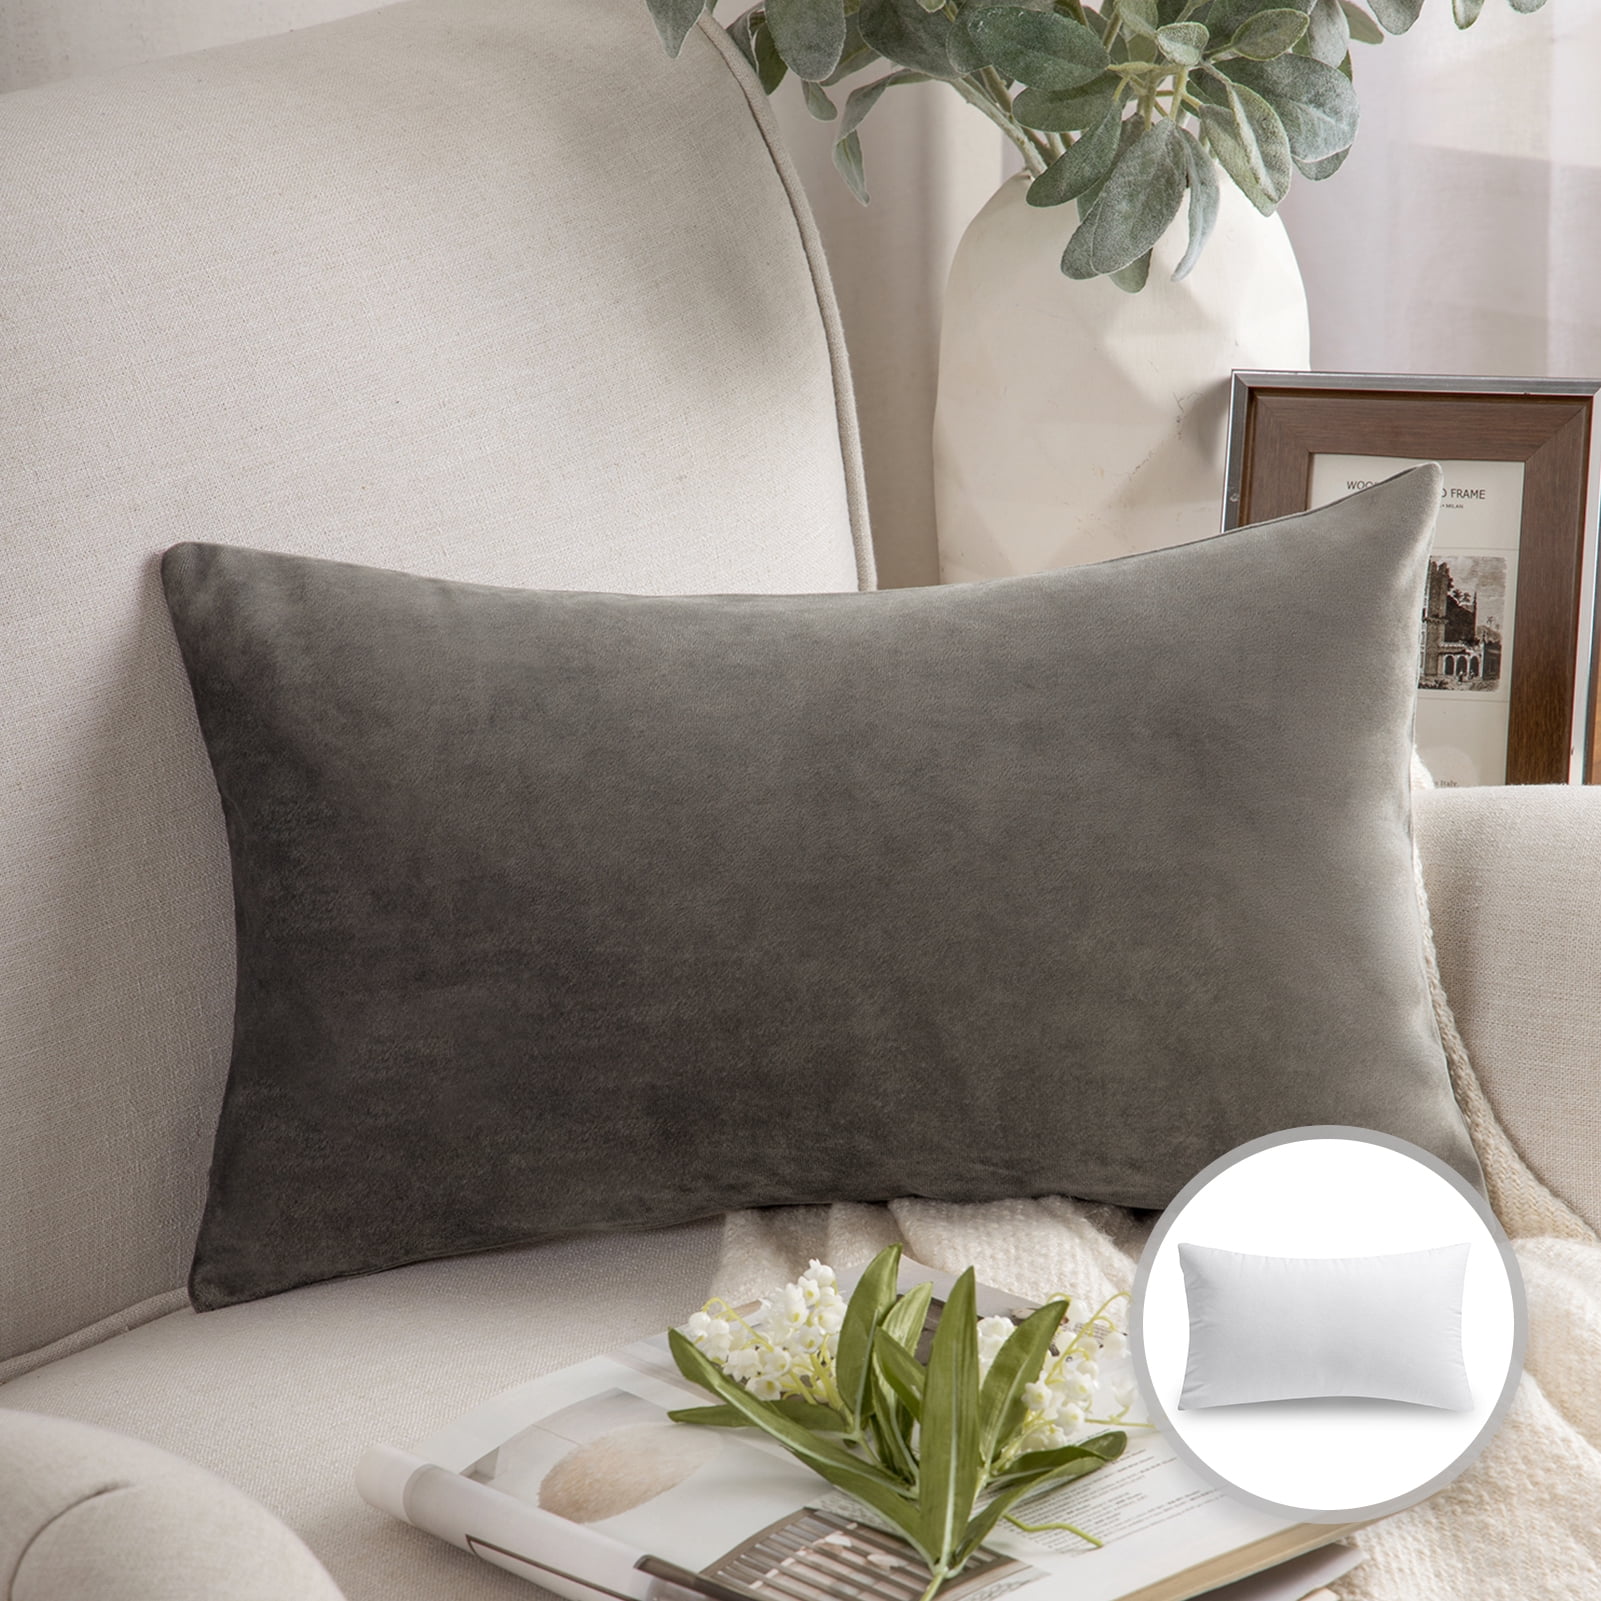 Designer Gray + Silver Decorative Throw Pillows